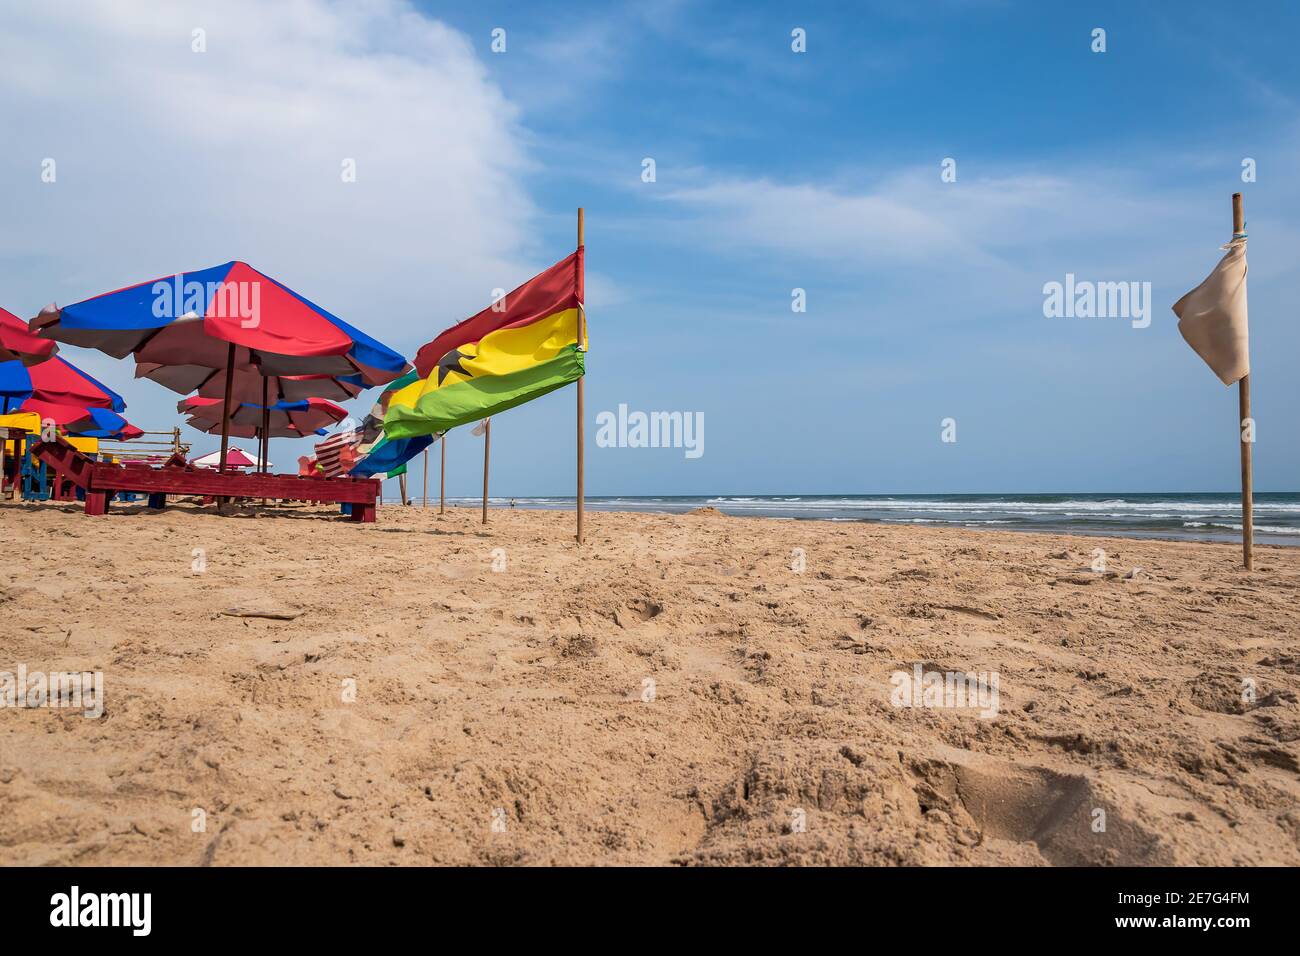 Une plage sans touristes et avec des drapeaux de différents pays Accra Ghana Afrique de l'Ouest Banque D'Images